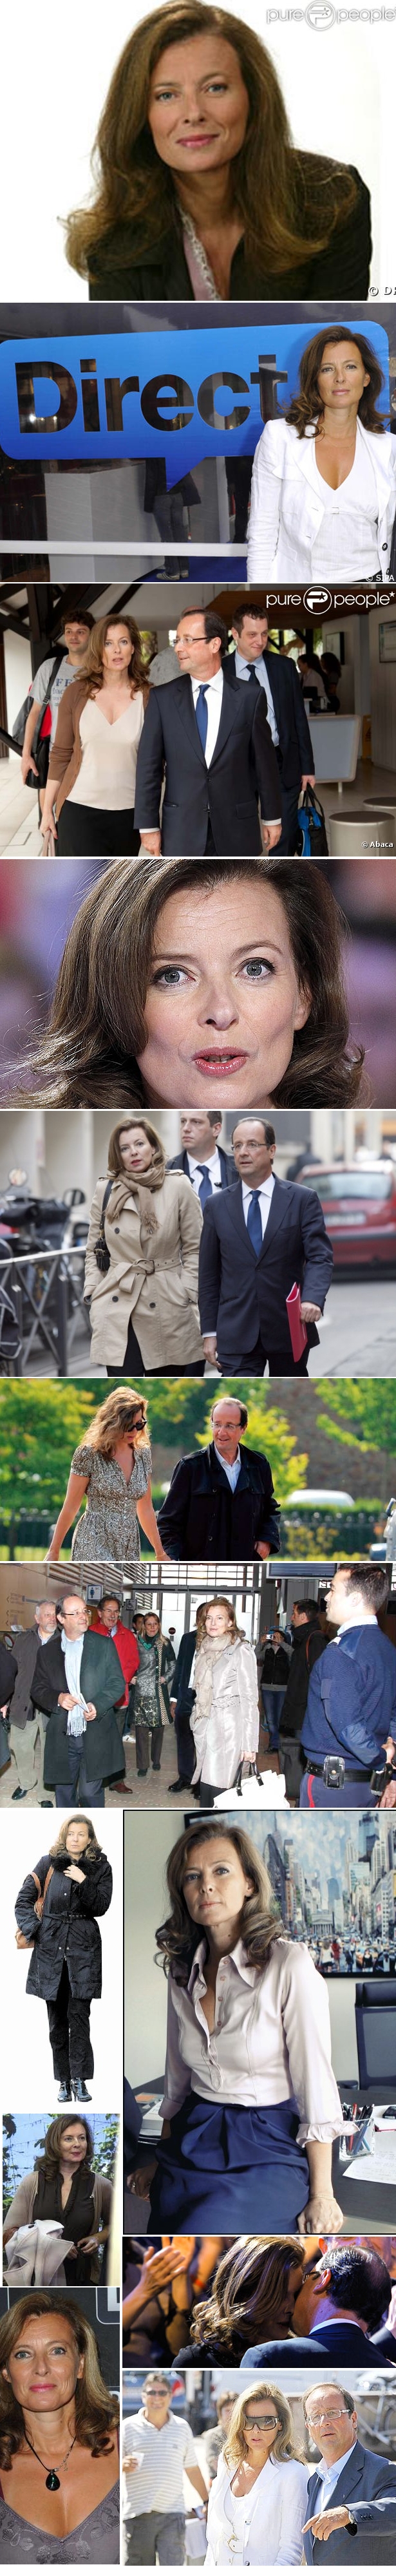 valerie de france 2 Enquanto Sarkozy e Hollande disputam, Valérie já ganhou!